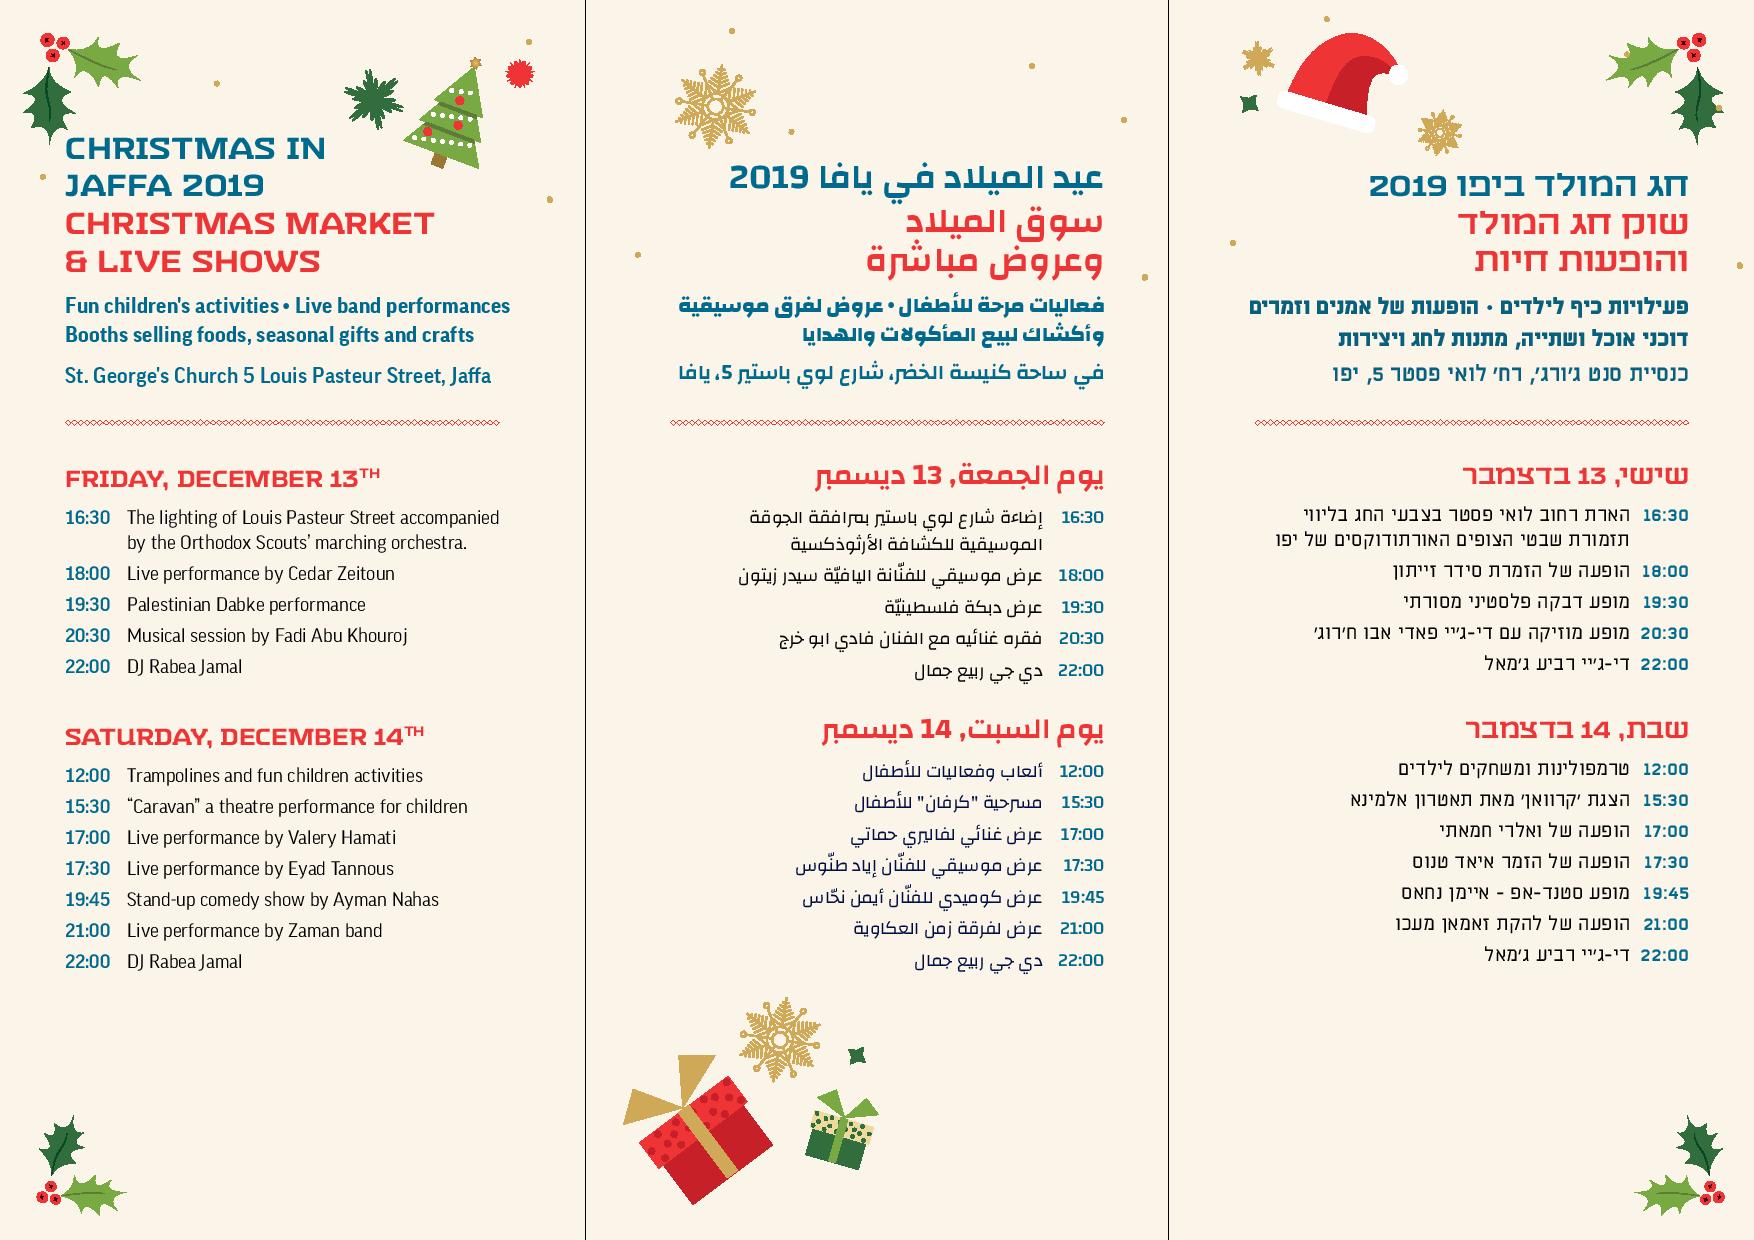  الجمعة والسبت: سوق الميلاد وعروض وفعاليات للأطفال في كنيسة الخضر بيافا 